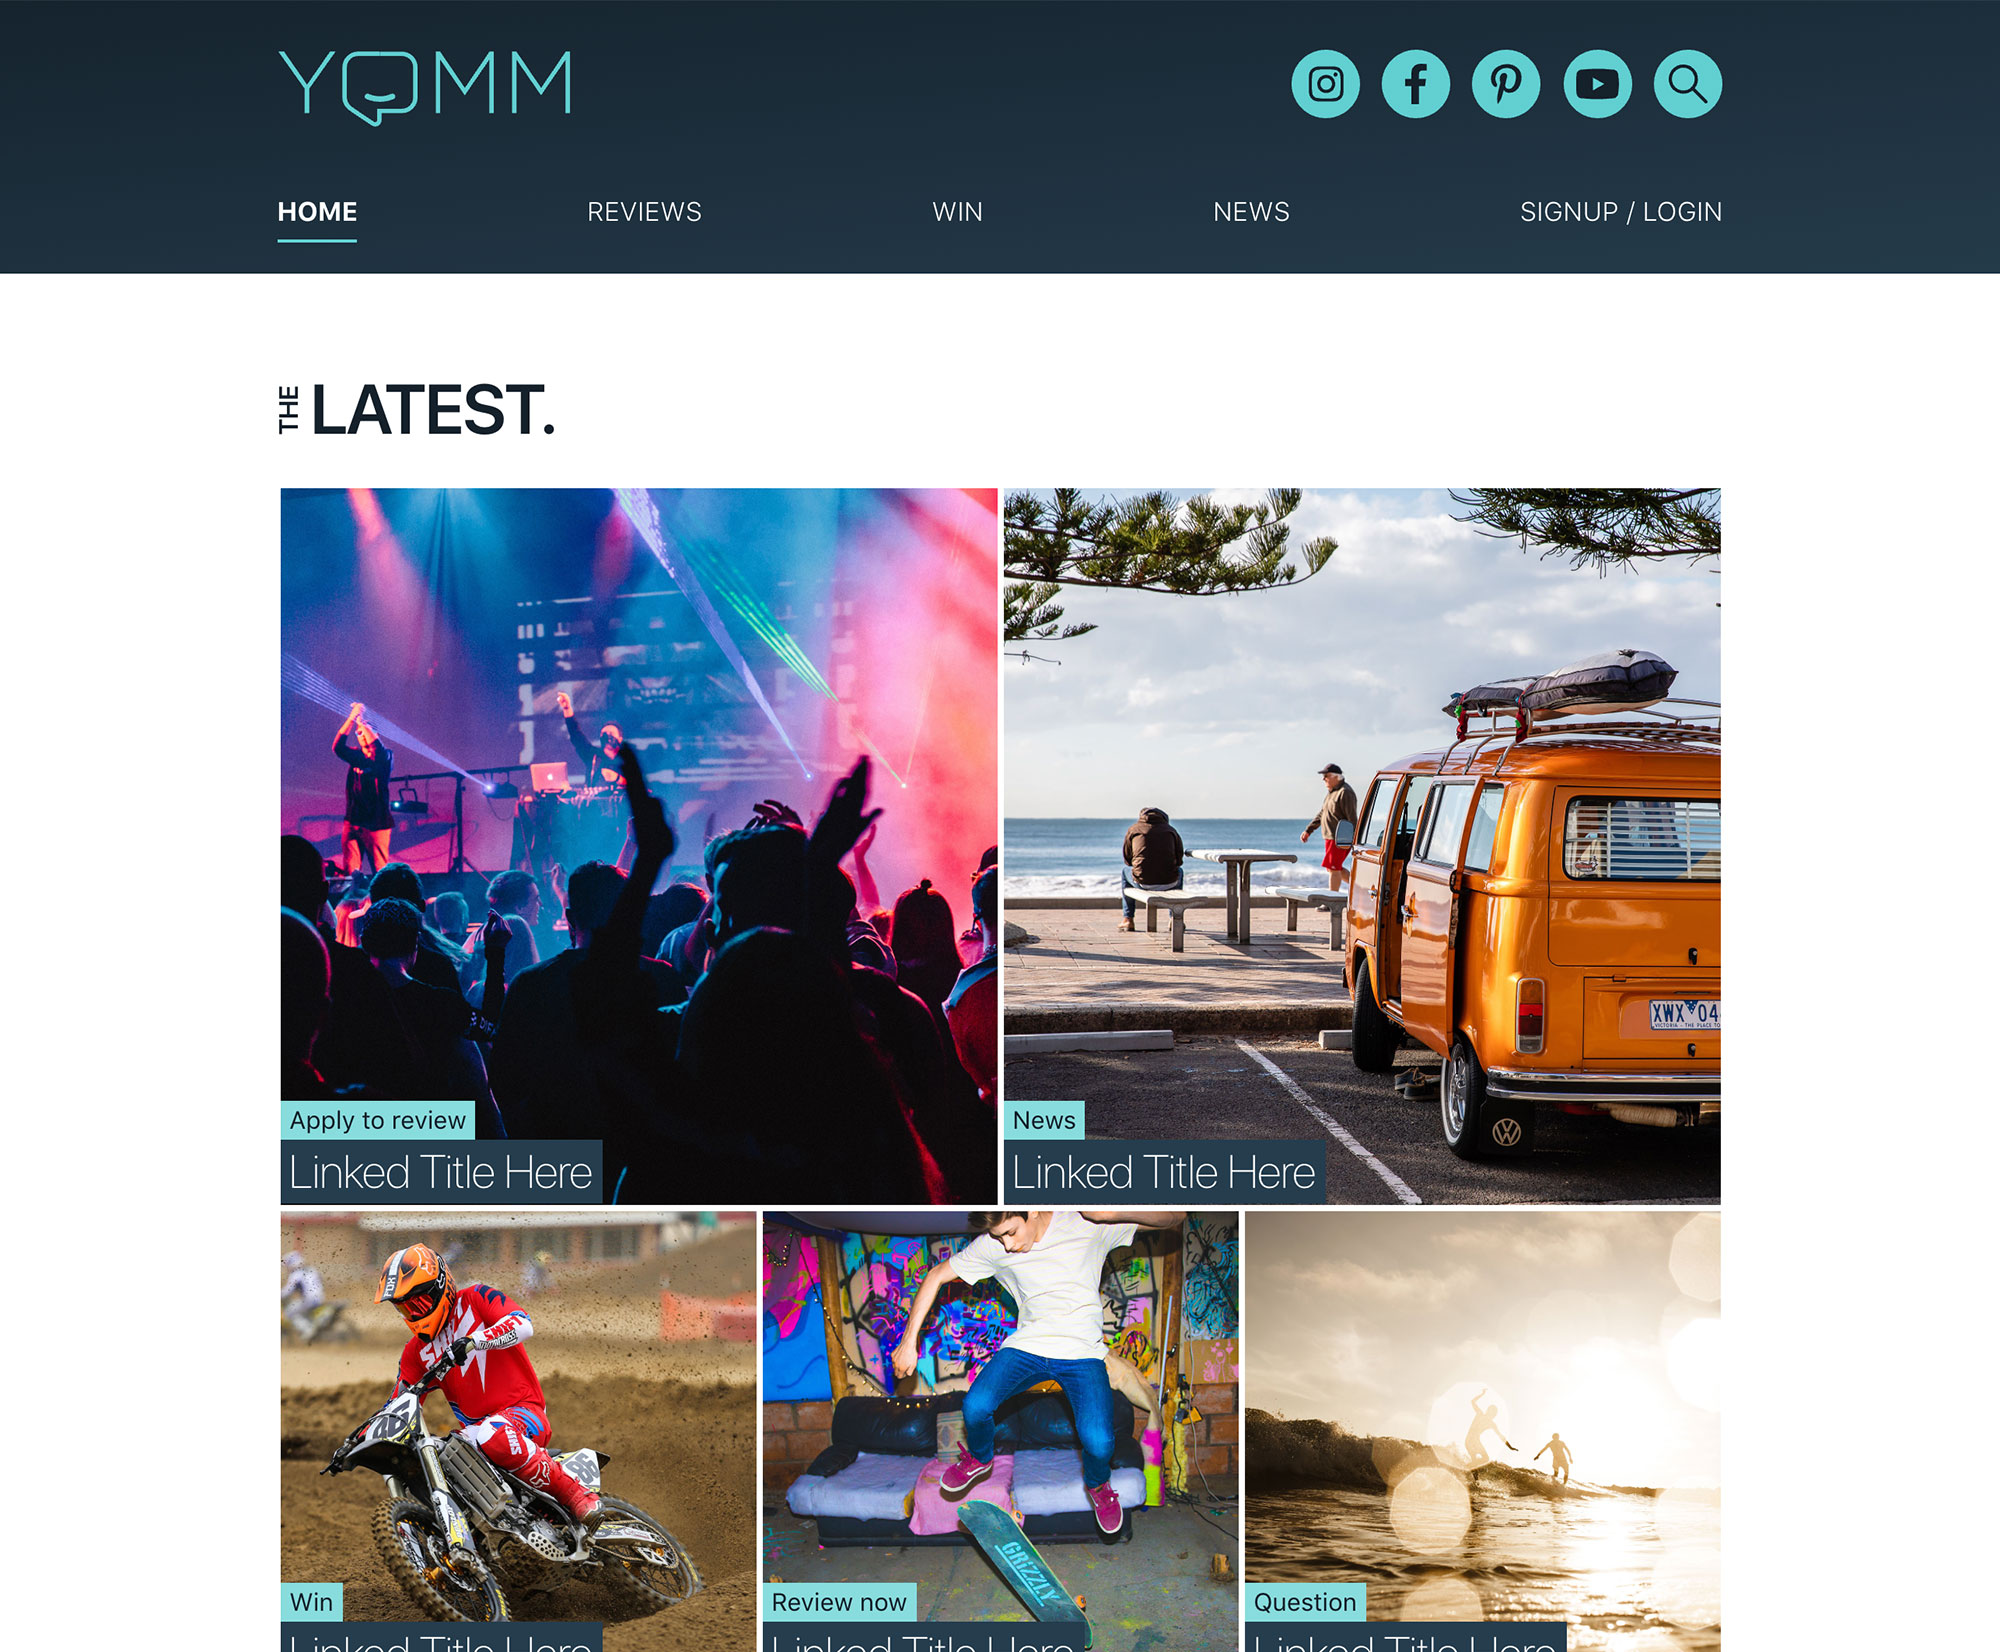 YOMM homepage